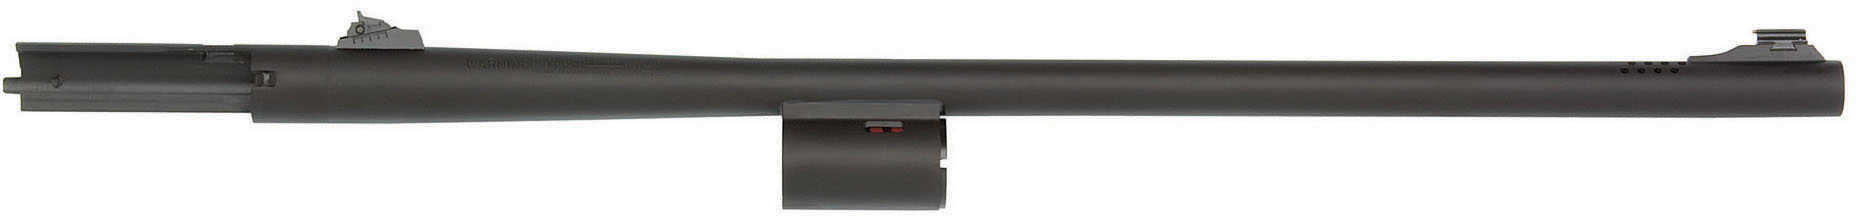 Mossberg 930 Barrel 12 gauge 24" Rifle Bore Adjustable Sights Matte Finish 93010